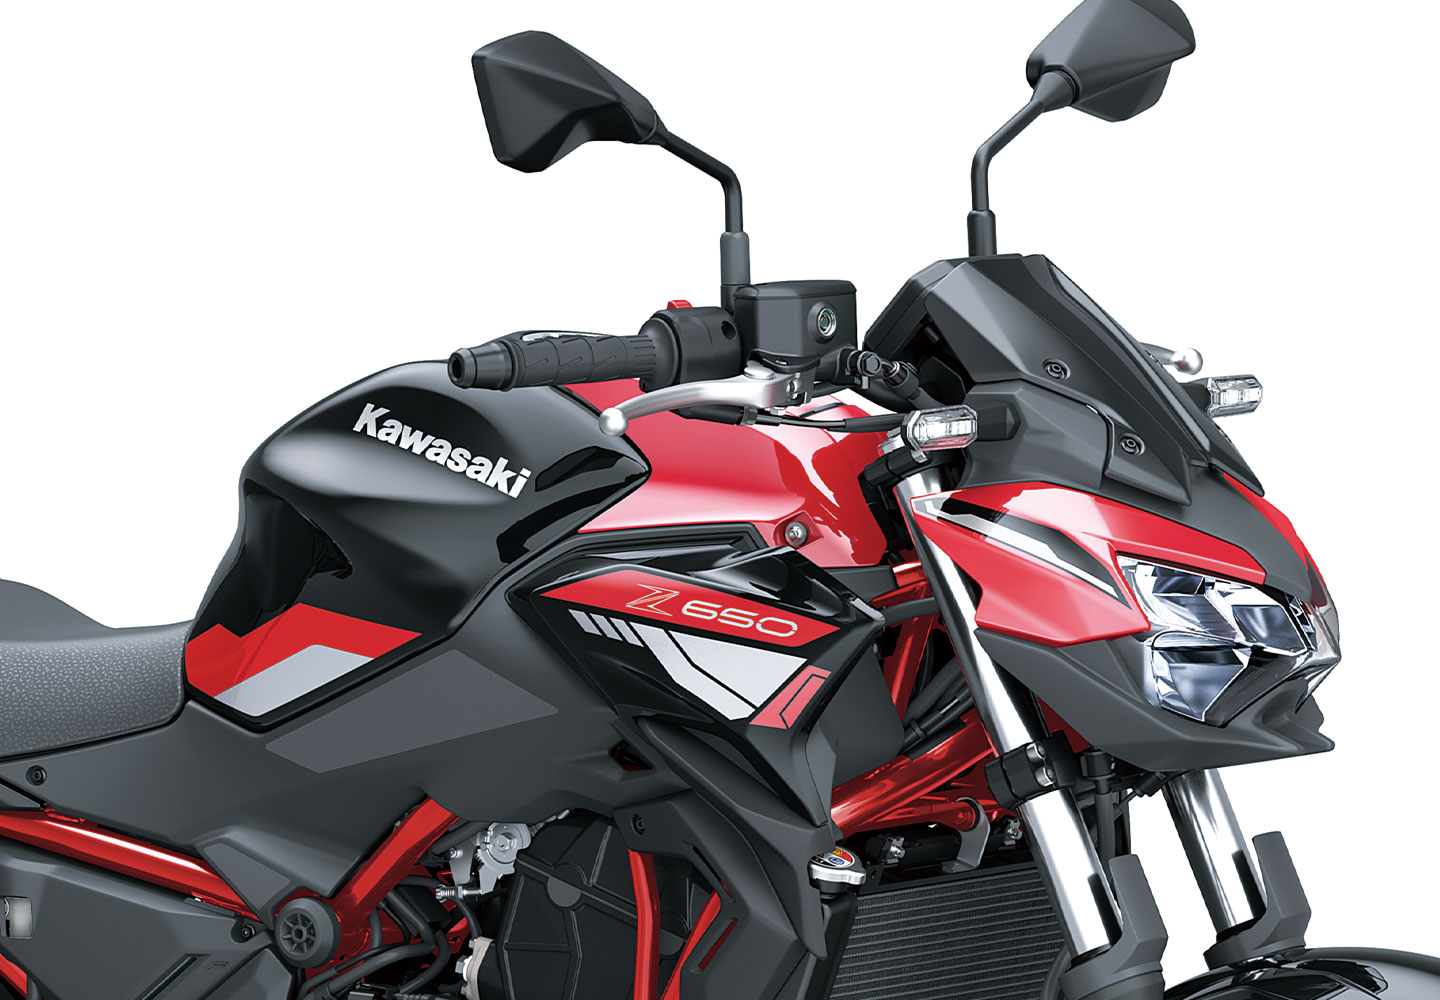 Kawasaki Z650 | Supernaked Motorcycle | Aggressive Versatility